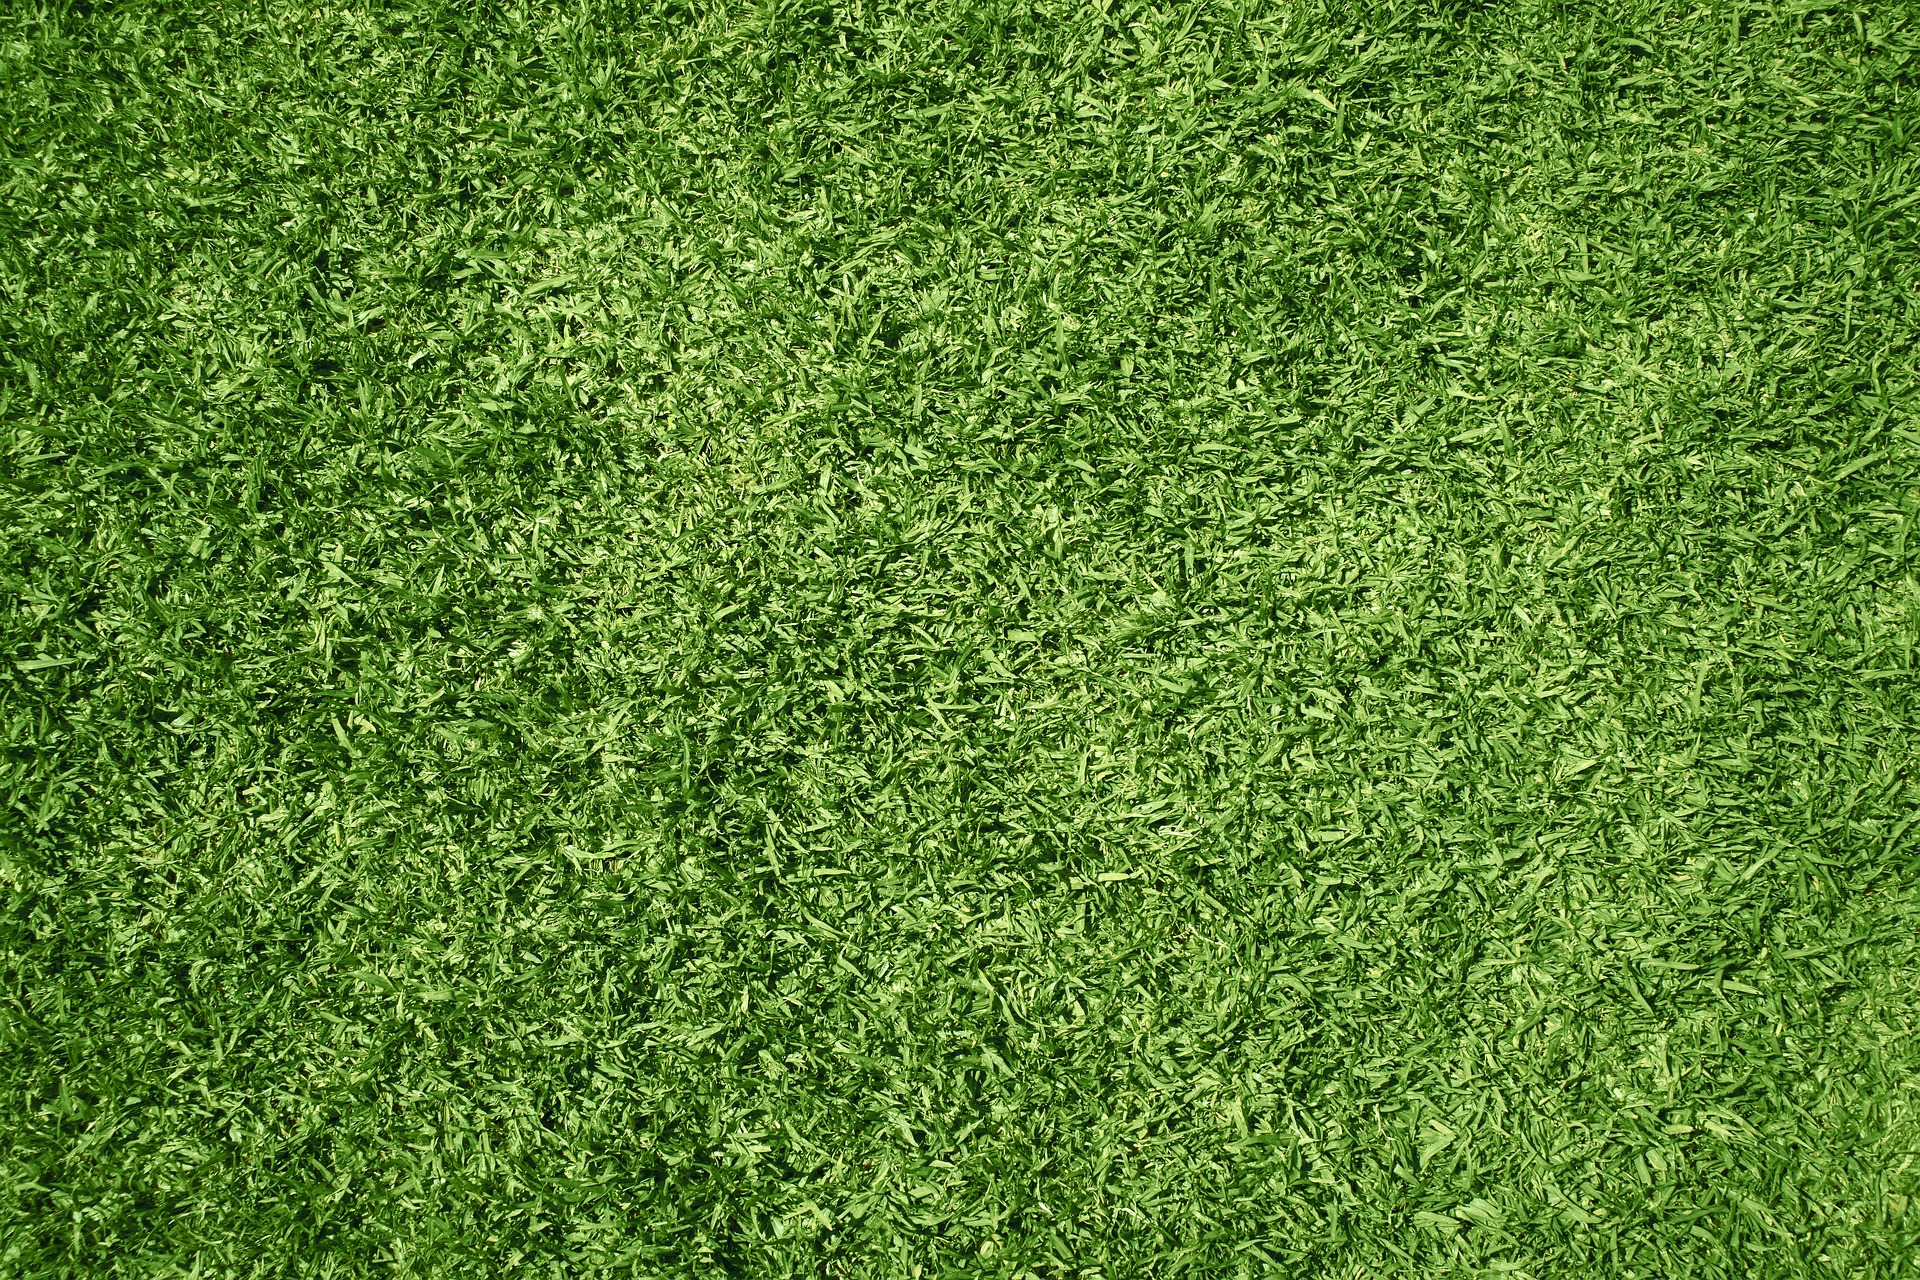 Les pelouses synthétiques transforment leur environnement en un désert stérile. © DaModernDaVinci, Pixabay